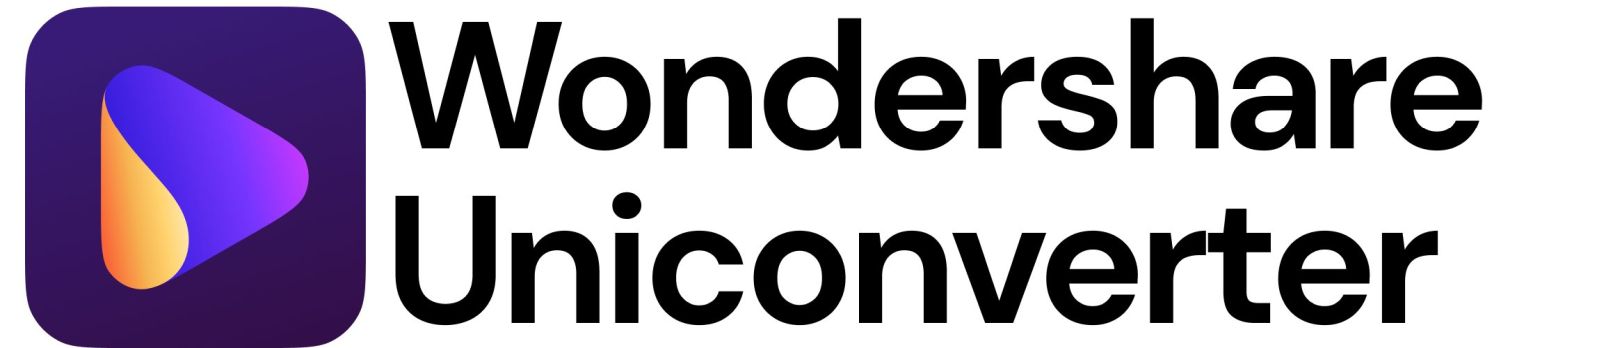 Uniconverter logo